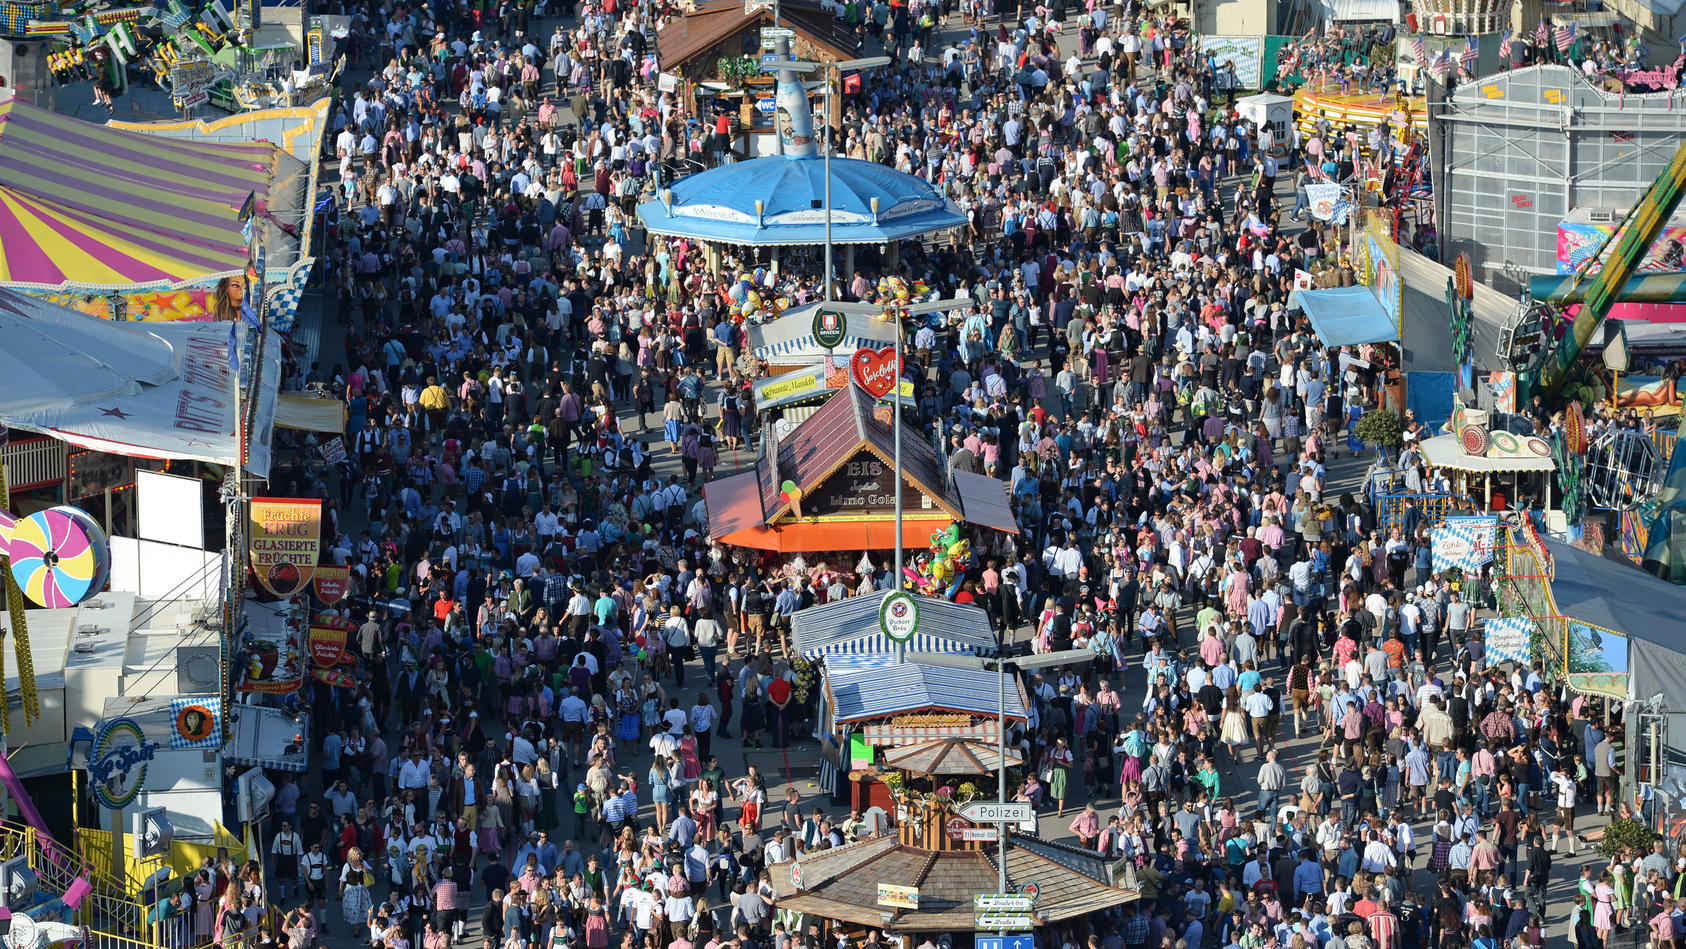 ARCHIV - 24.09.2016, Bayern, München: Zahlreiche Menschen gehen bei Sonnenschein über das Oktoberfest-Gelände. (zu dpa: «Countdown zur Wiesn zwischen Pandemie, Inflation und Energiekrise») Foto: picture alliance / dpa +++ dpa-Bildfunk +++